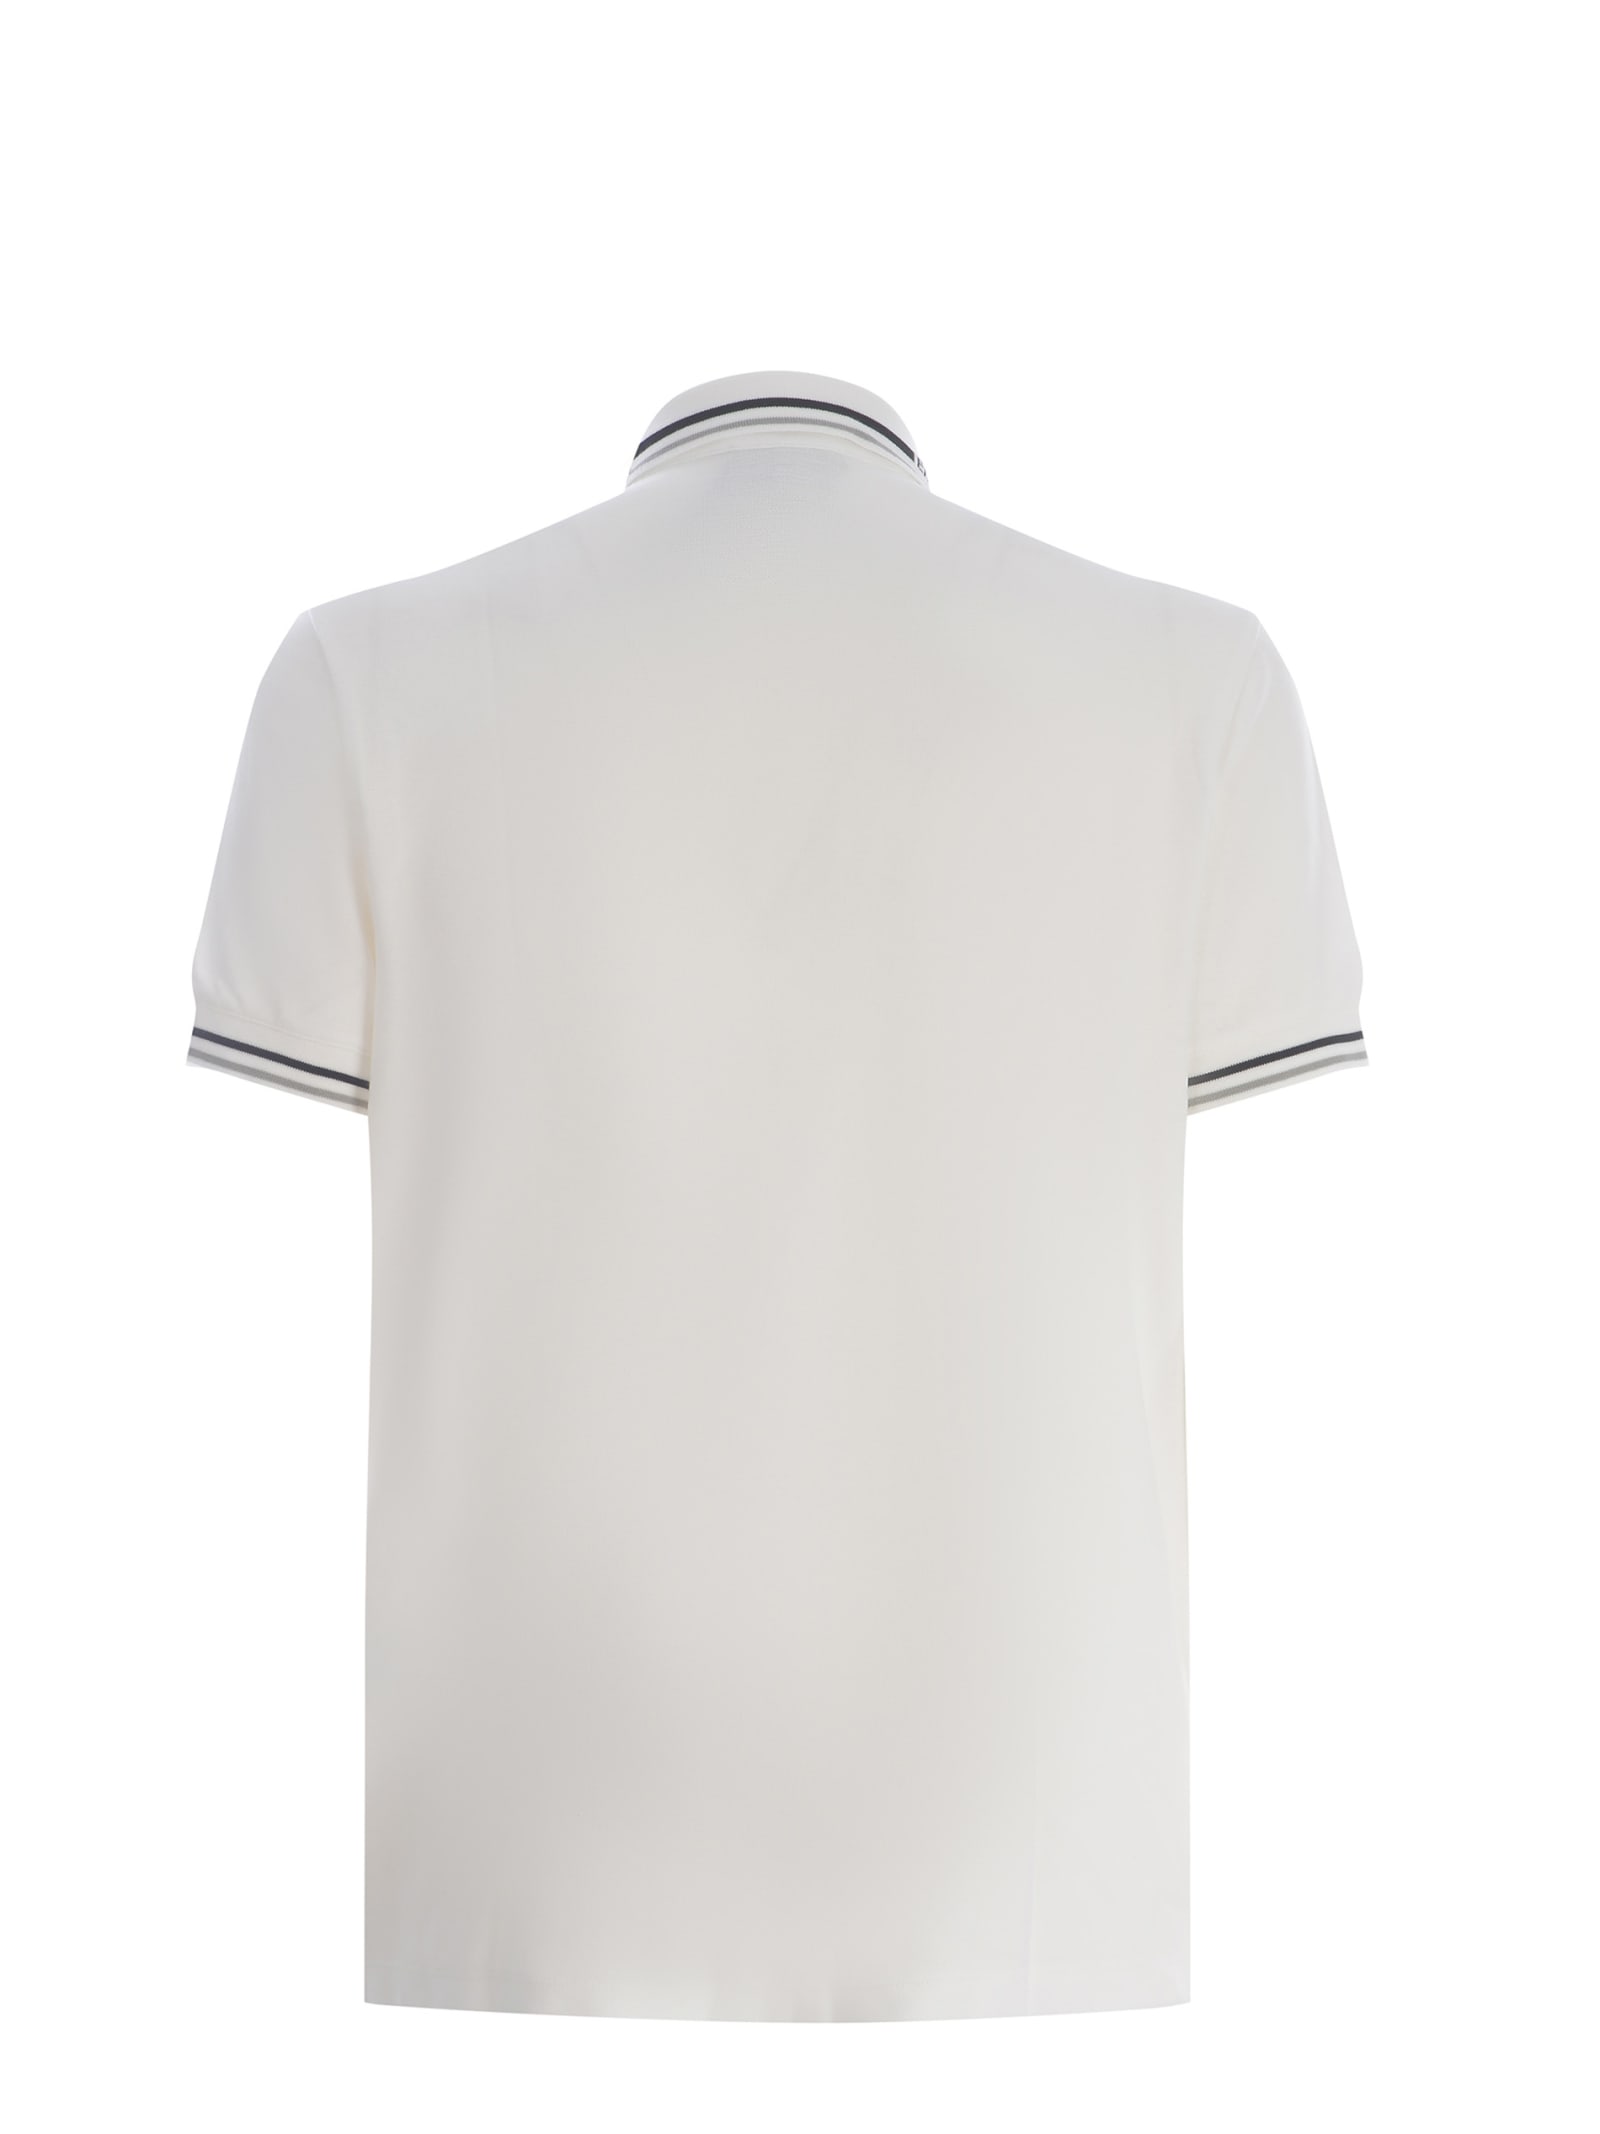 Shop Emporio Armani Polo Shirt  Made Of Cotton Pique In White